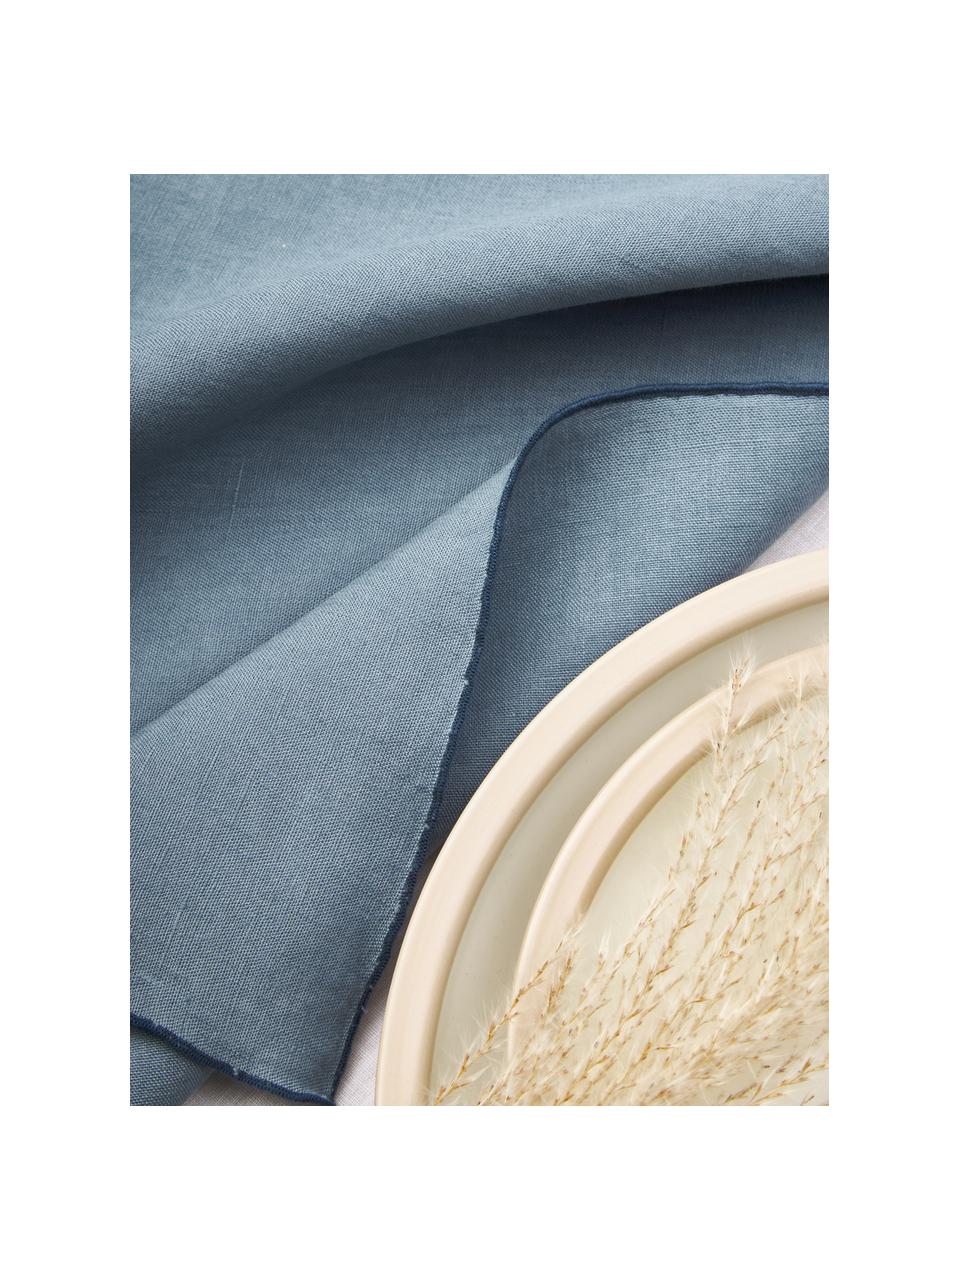 Stoffen servetten Kennedy van linnen met bies, 4 stuks, 100% gewassen linnen

Linnen is een natuurlijke vezel die wordt gekenmerkt door ademend vermogen, duurzaamheid en zachtheid.

Het materiaal dat in dit product wordt gebruikt, is getest op schadelijke stoffen en gecertificeerd volgens STANDARD 100 door OEKO-TEX®, 6760CIT, CITEVE, Grijsblauw, B 45 x L 45 cm